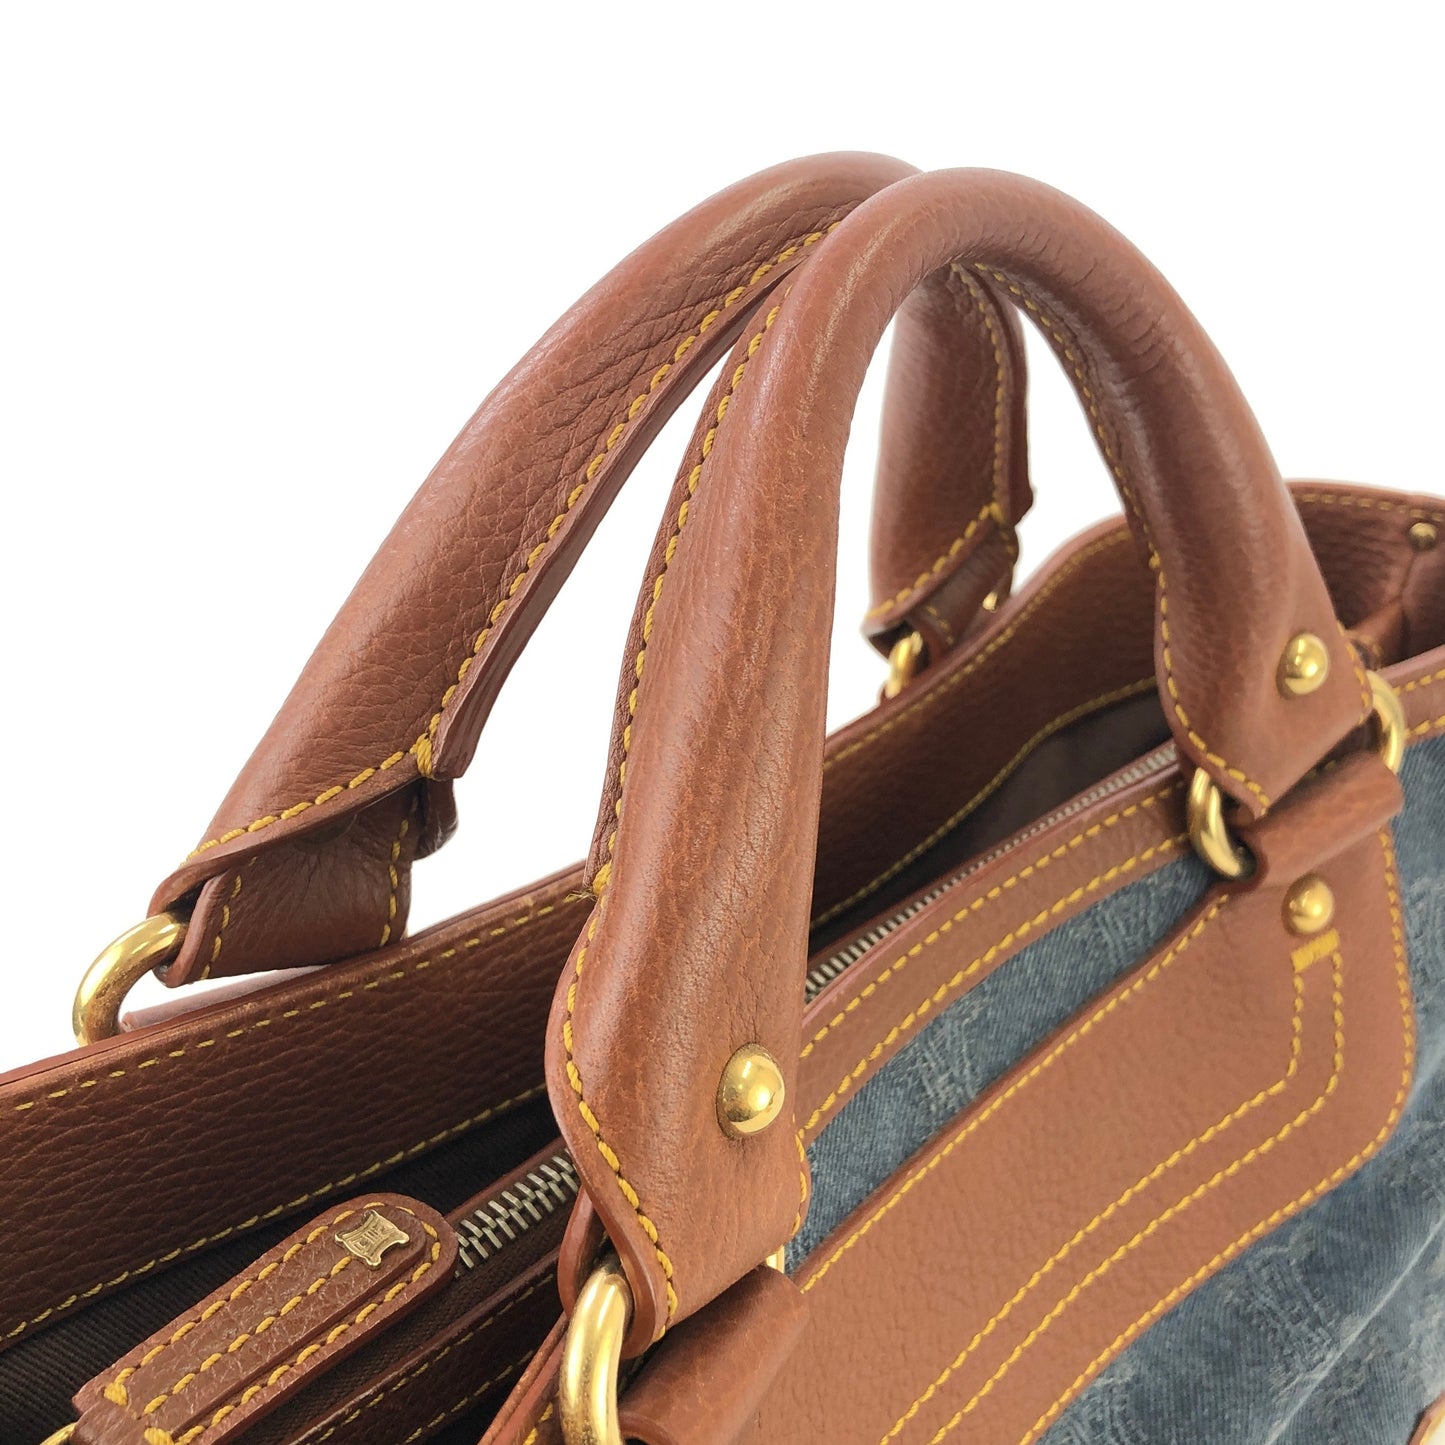 CELINE Paris macadam Denim Boogie bag Handbag Old CELINE Vintage 5s27n5